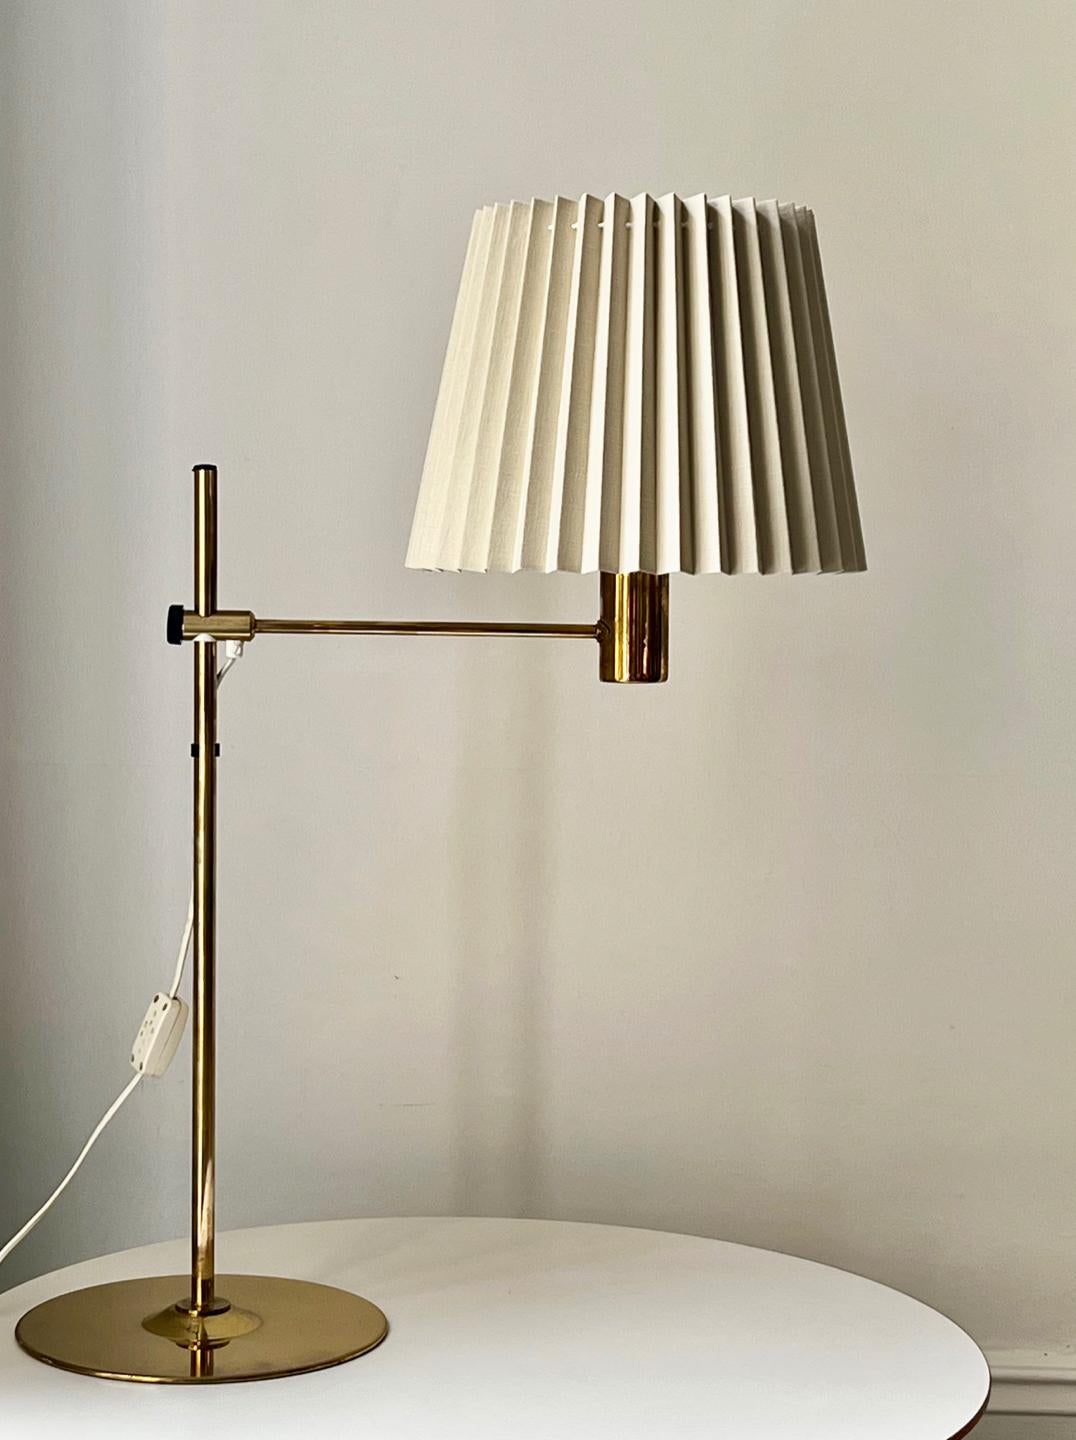 Une lampe de table de bonne taille en laiton par Hans Agne Jakobsson, et fabriquée par son entreprise à Markaryd, Suède, milieu du 20e siècle. Étiqueté à la base.

Un design simple avec un bras en laiton réglable en hauteur et une base bien lestée.